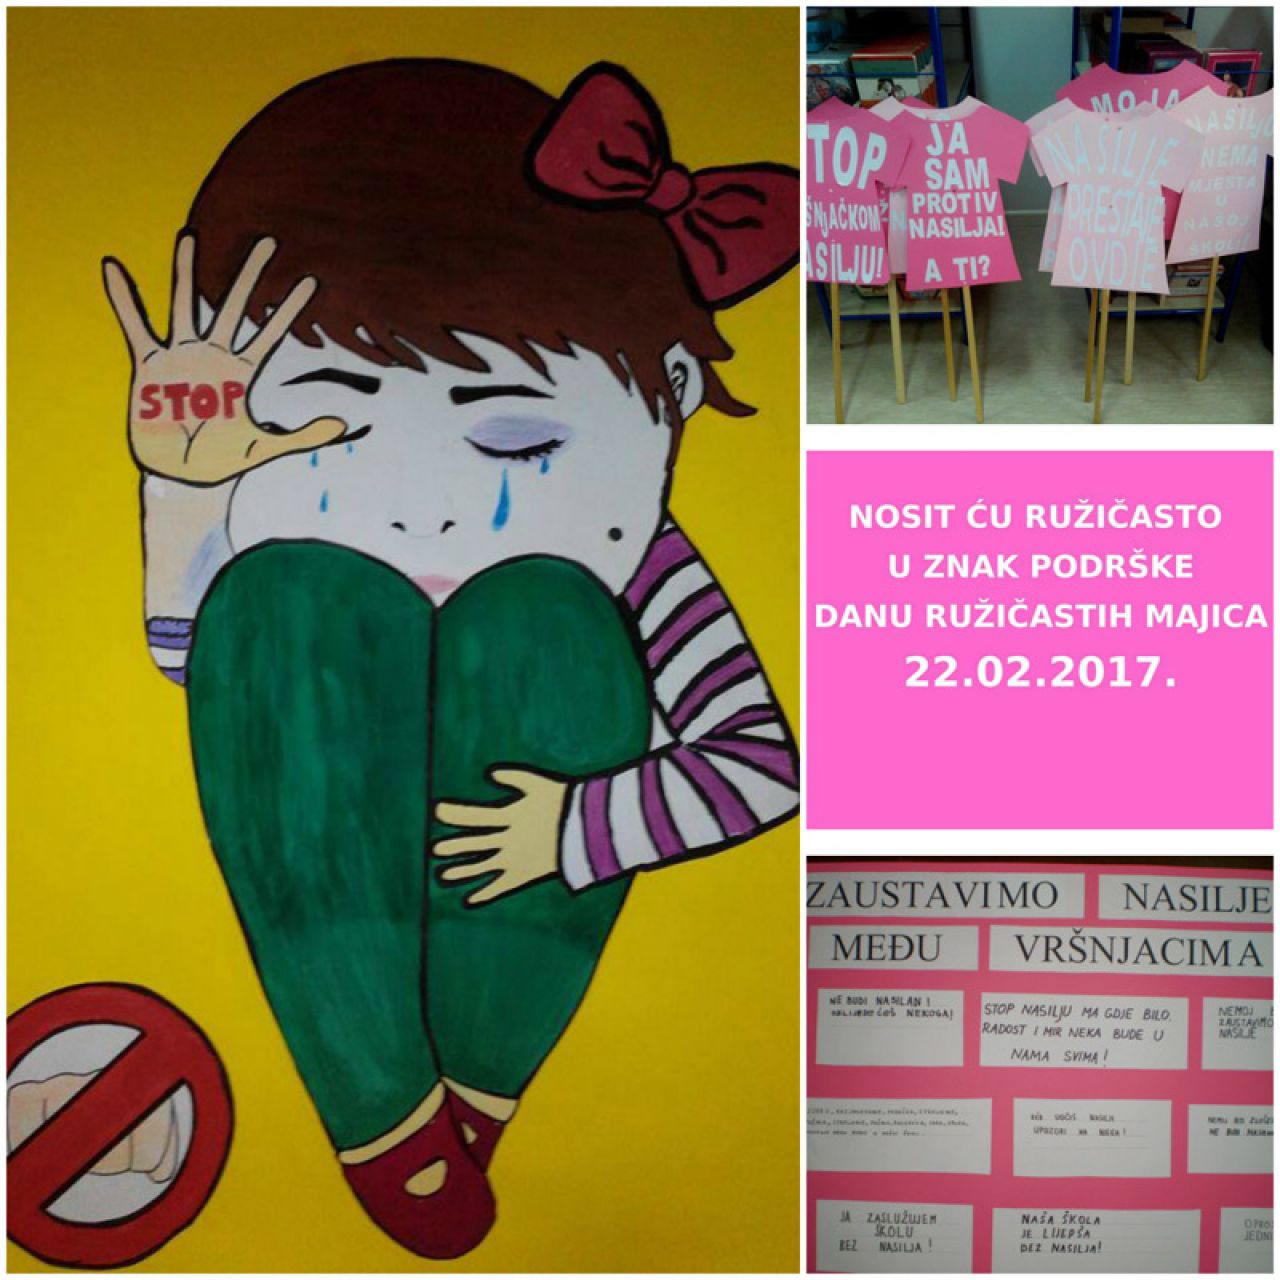 Dan ružičastih majica obilježit će simbolično potpisivanje Peticije protiv vršnjačkog nasilja